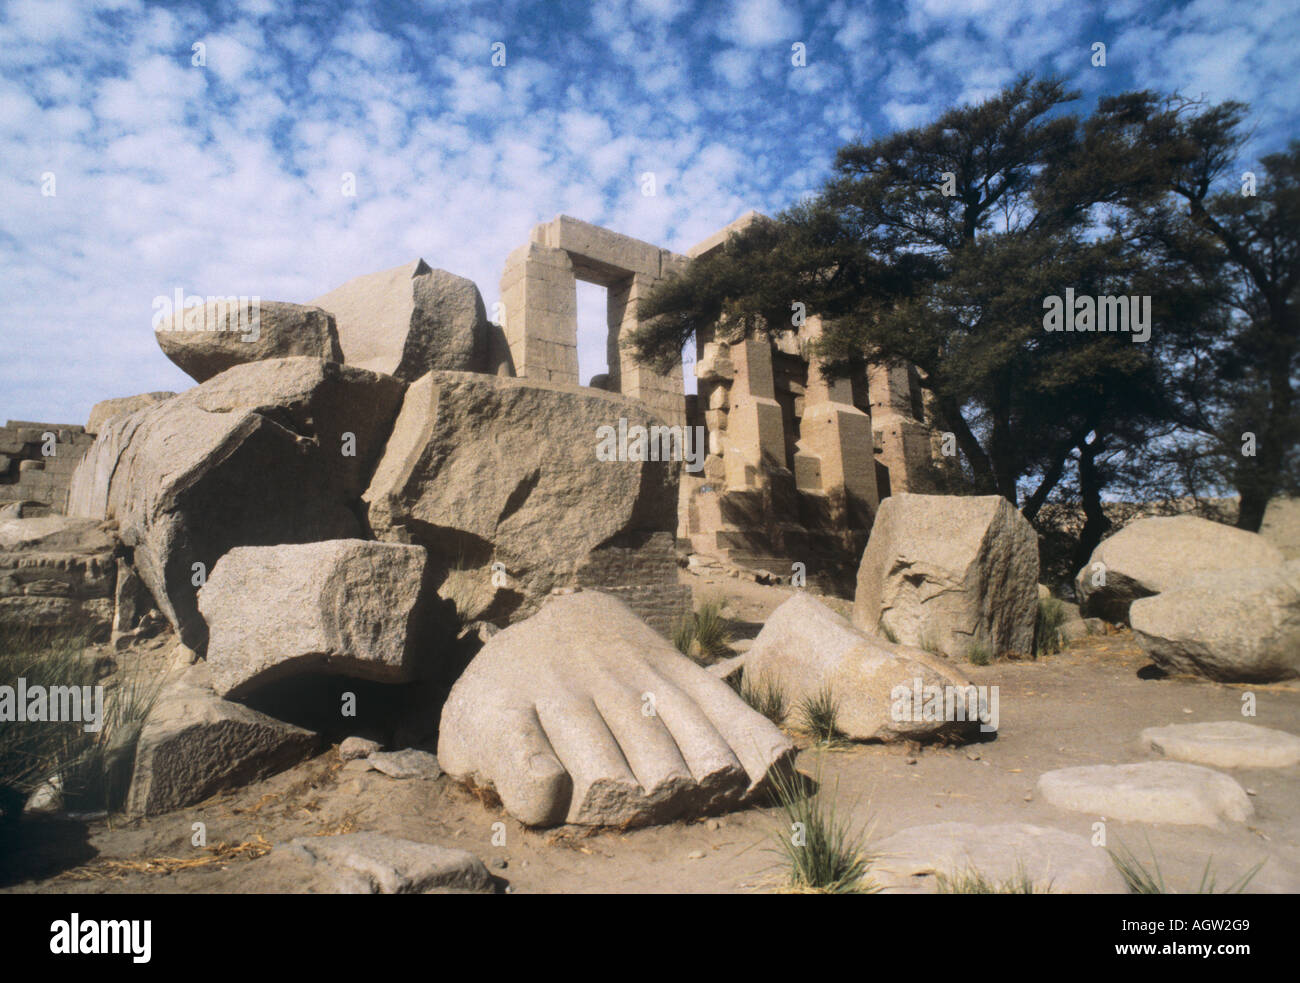 L'Égypte, le Ramasseum, sur la rive occidentale. Les vestiges de statues géantes à l'entrée. Le sujet du poème de Shelley Ozymandias. Banque D'Images